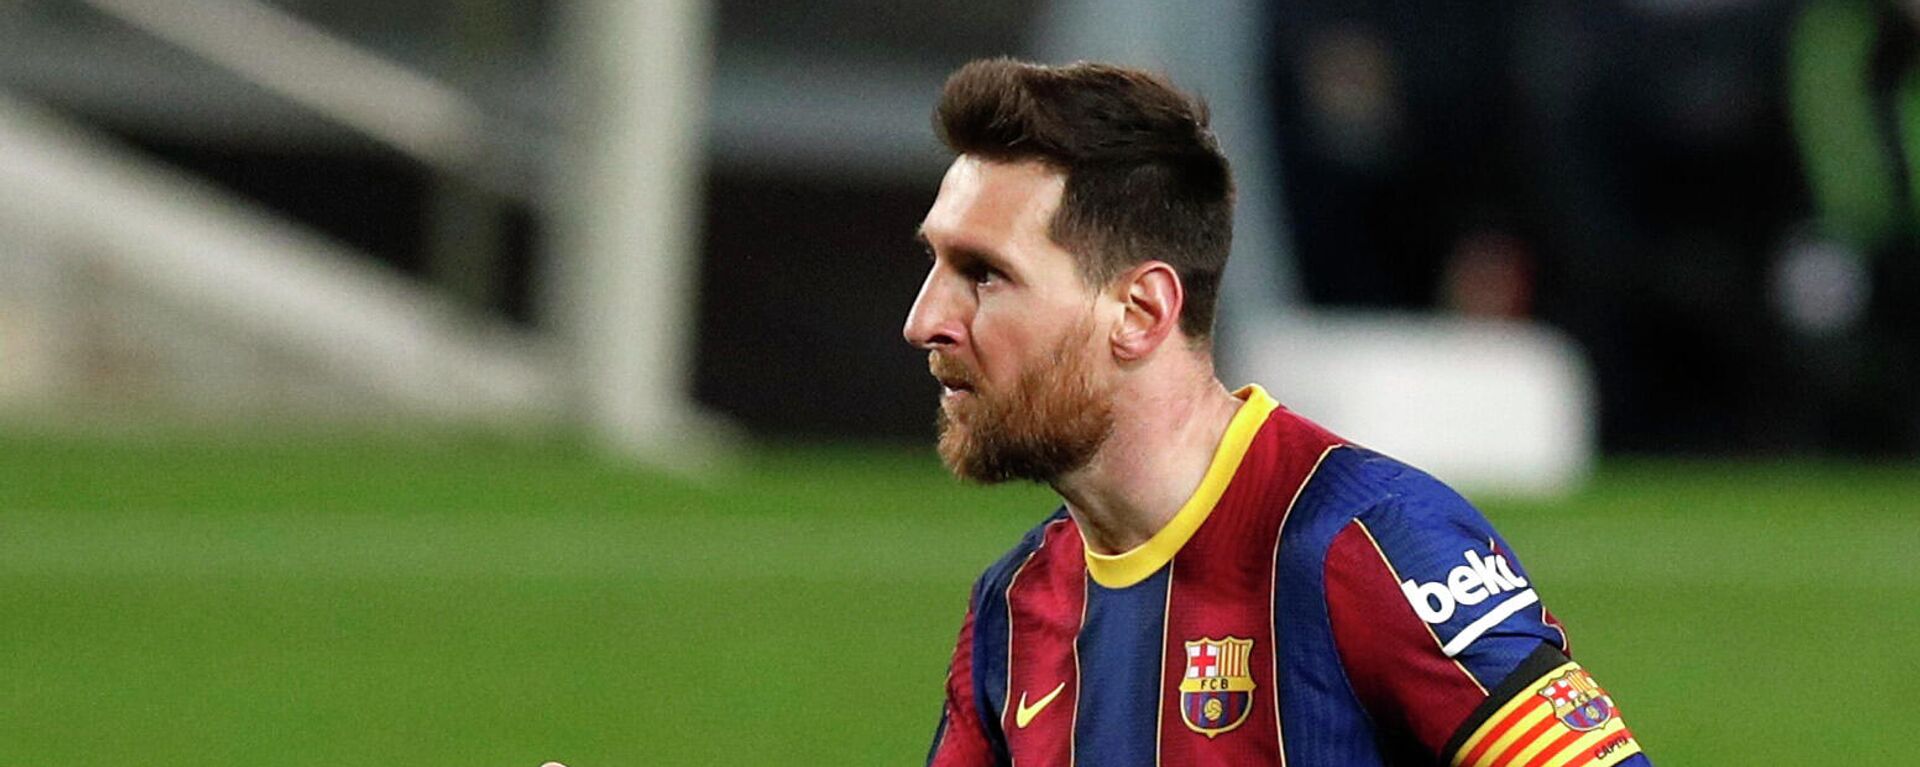 El futbolista Lionel Messi - Sputnik Mundo, 1920, 16.03.2021